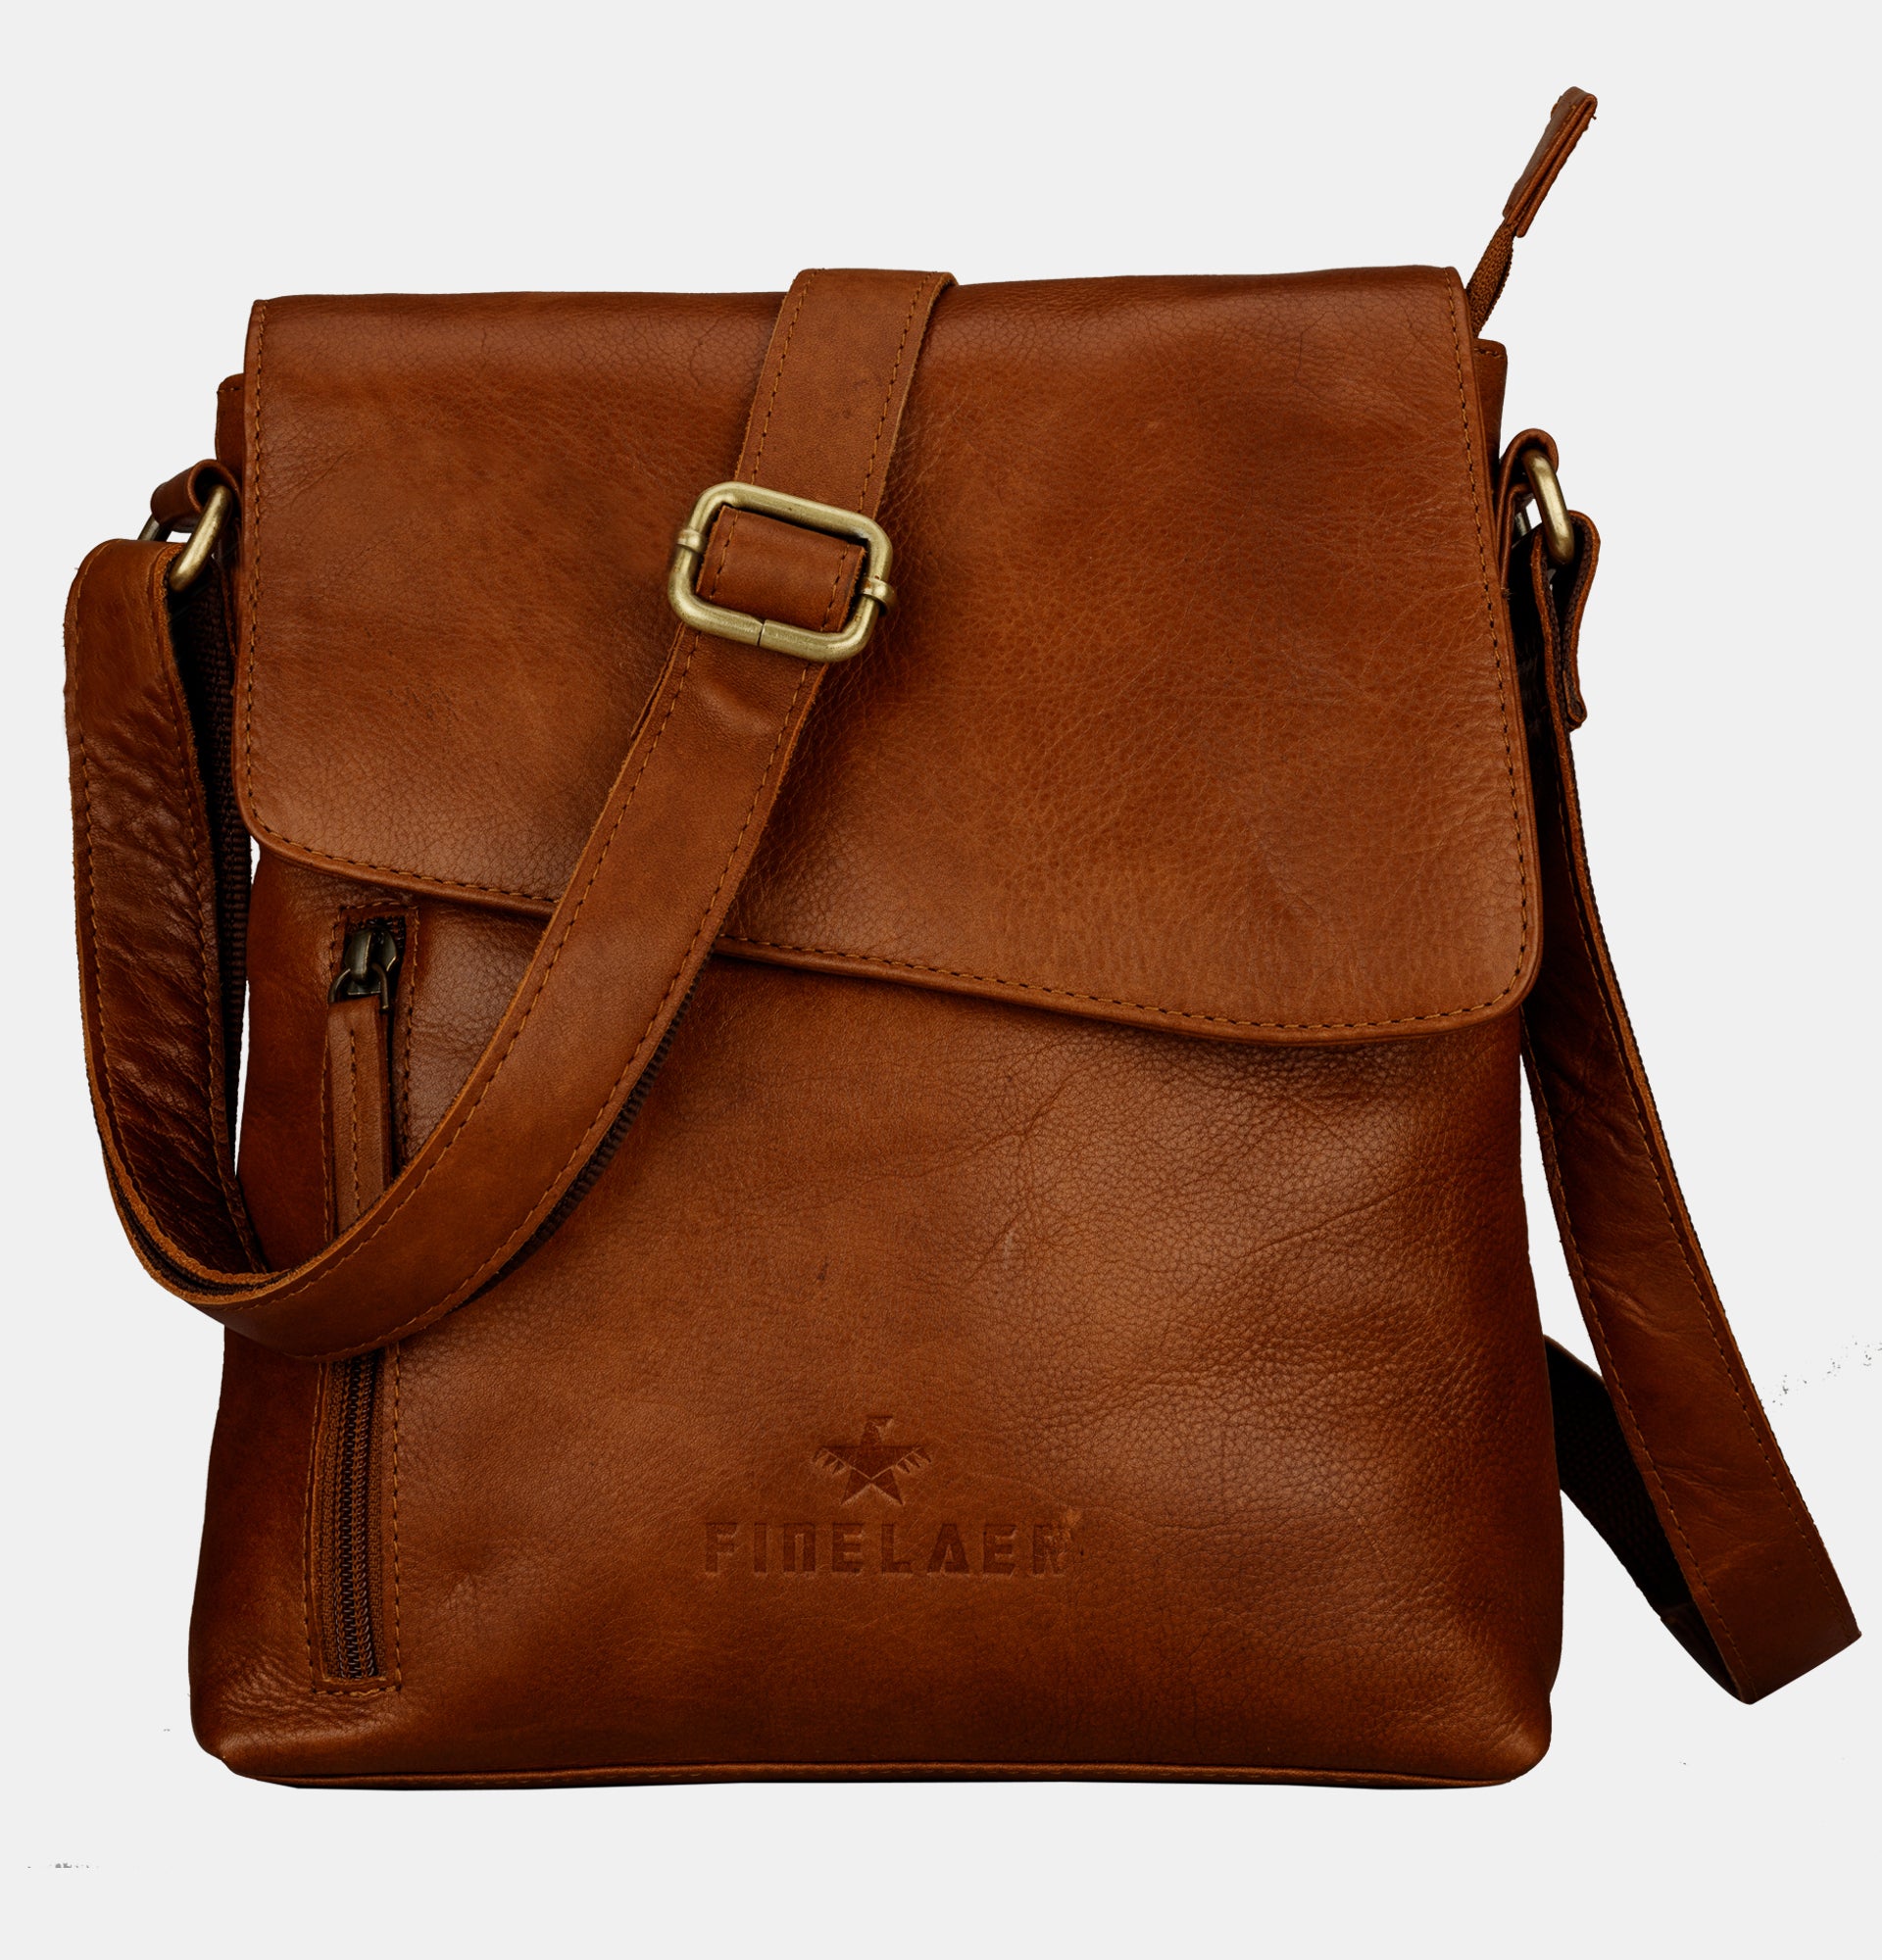 Finelaer Brown Leather Crossover Crossbody Shoulder Bag